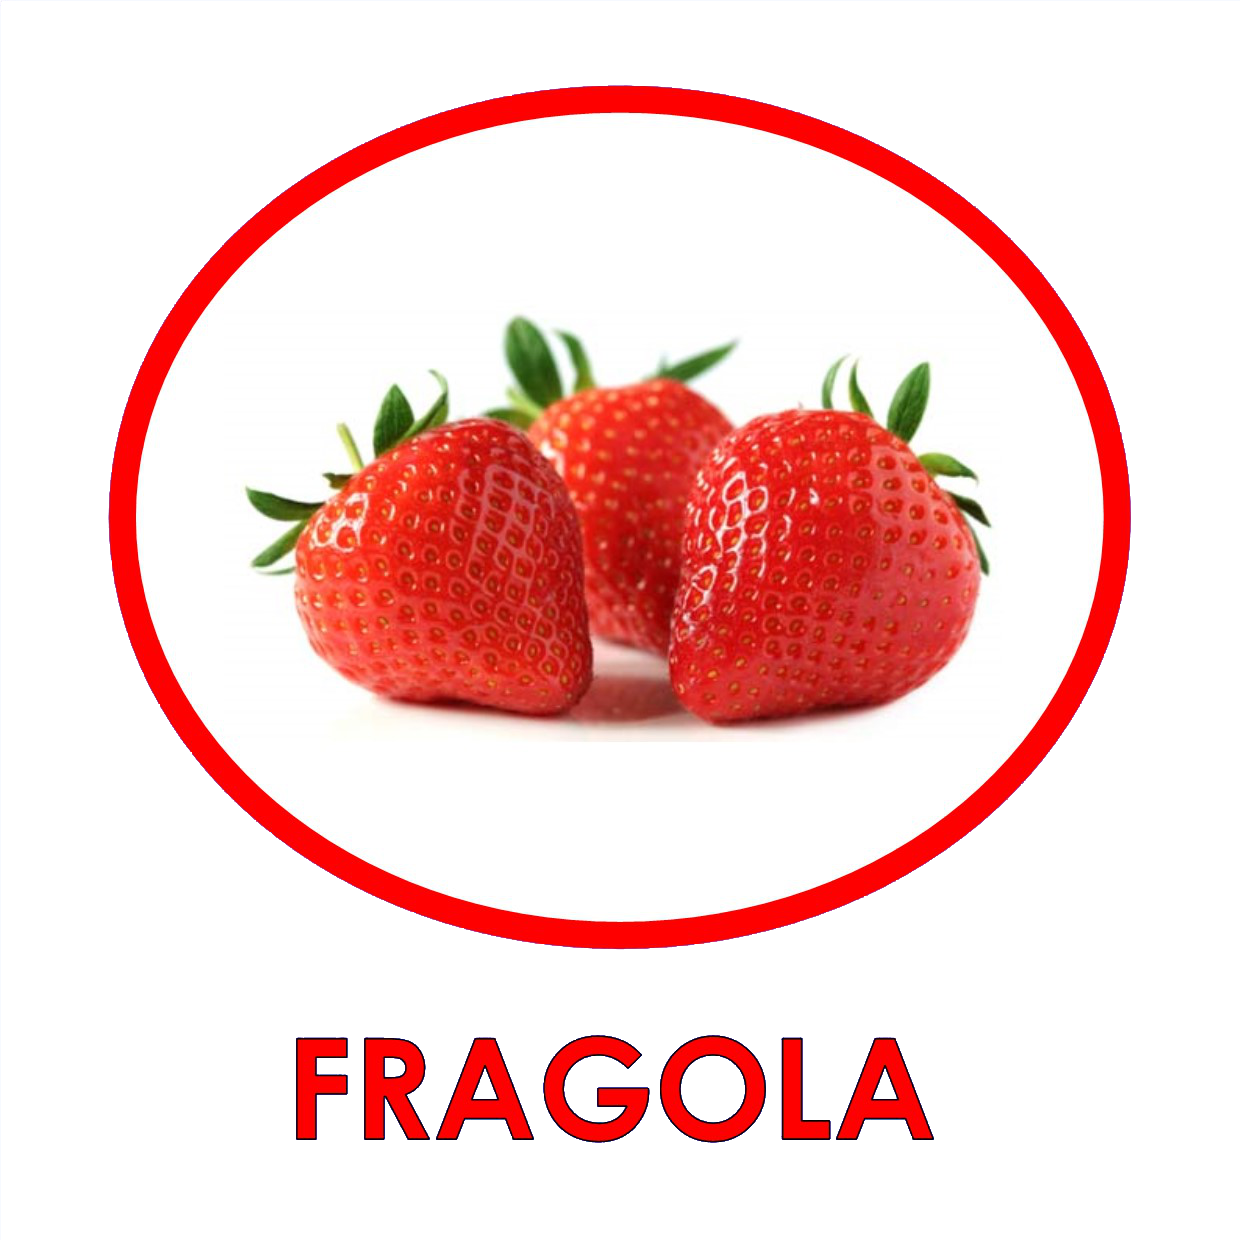 FRAGOLA.png